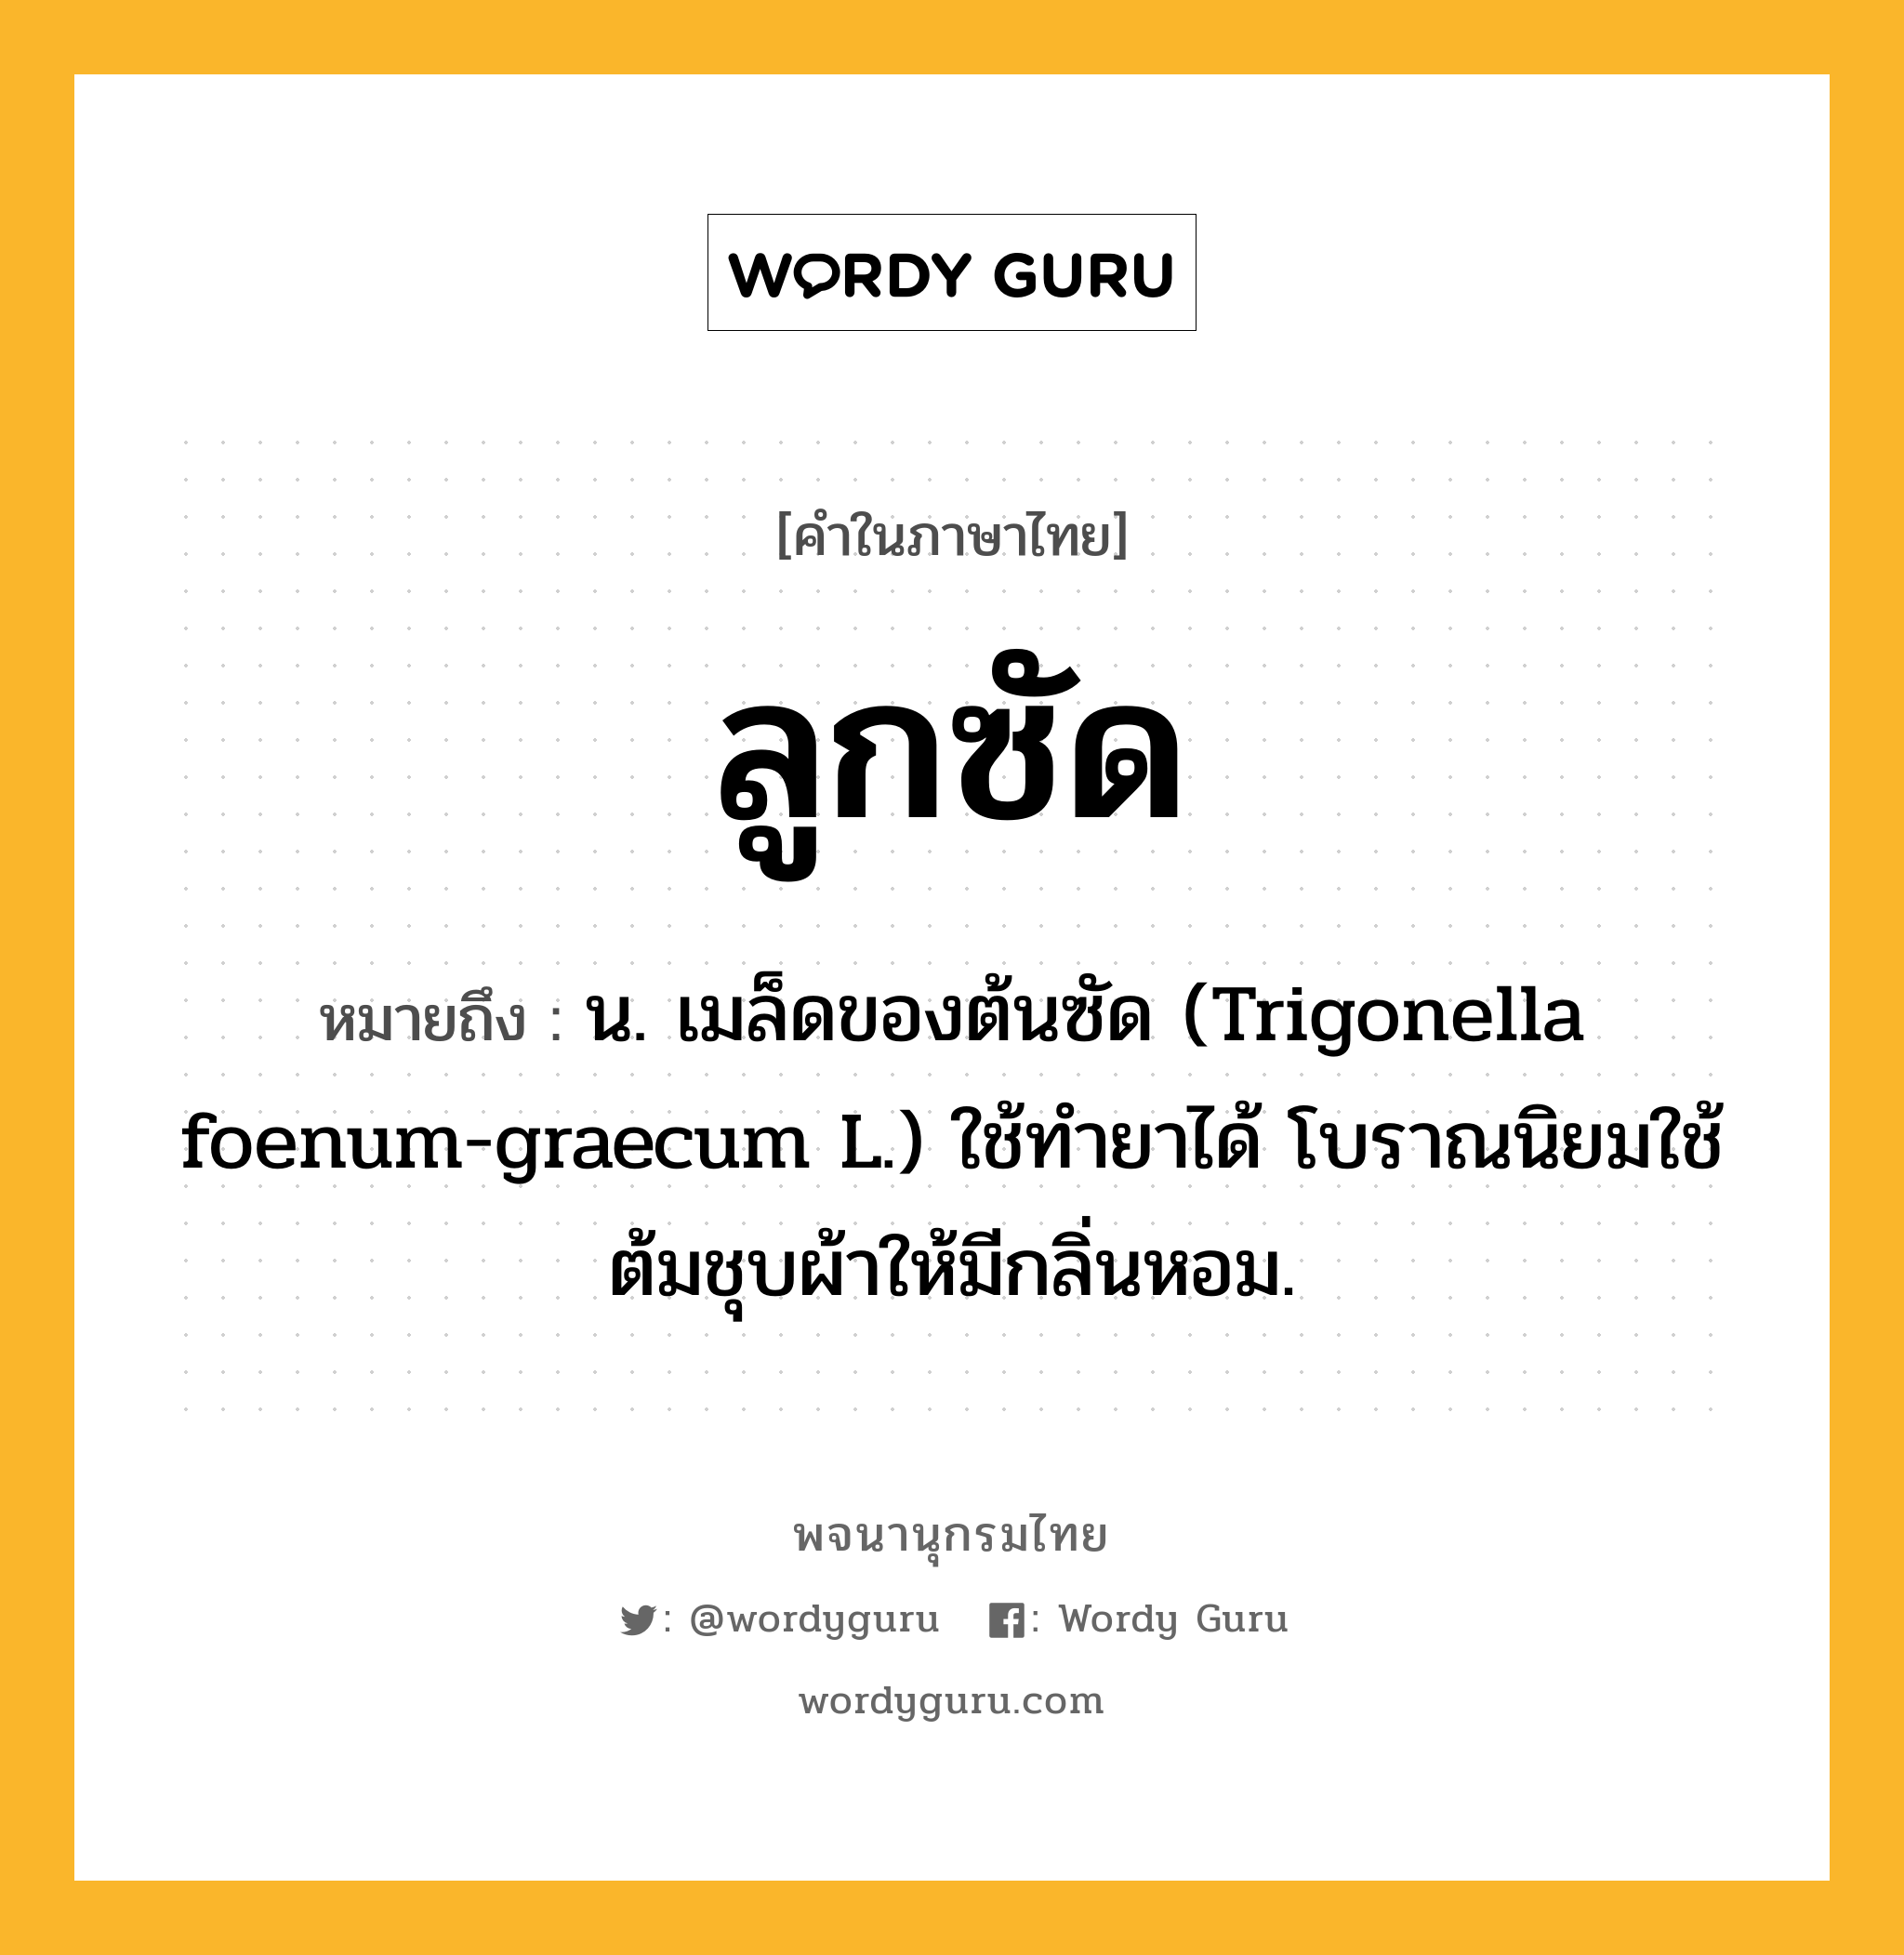 ลูกซัด ความหมาย หมายถึงอะไร?, คำในภาษาไทย ลูกซัด หมายถึง น. เมล็ดของต้นซัด (Trigonella foenum-graecum L.) ใช้ทำยาได้ โบราณนิยมใช้ต้มชุบผ้าให้มีกลิ่นหอม.